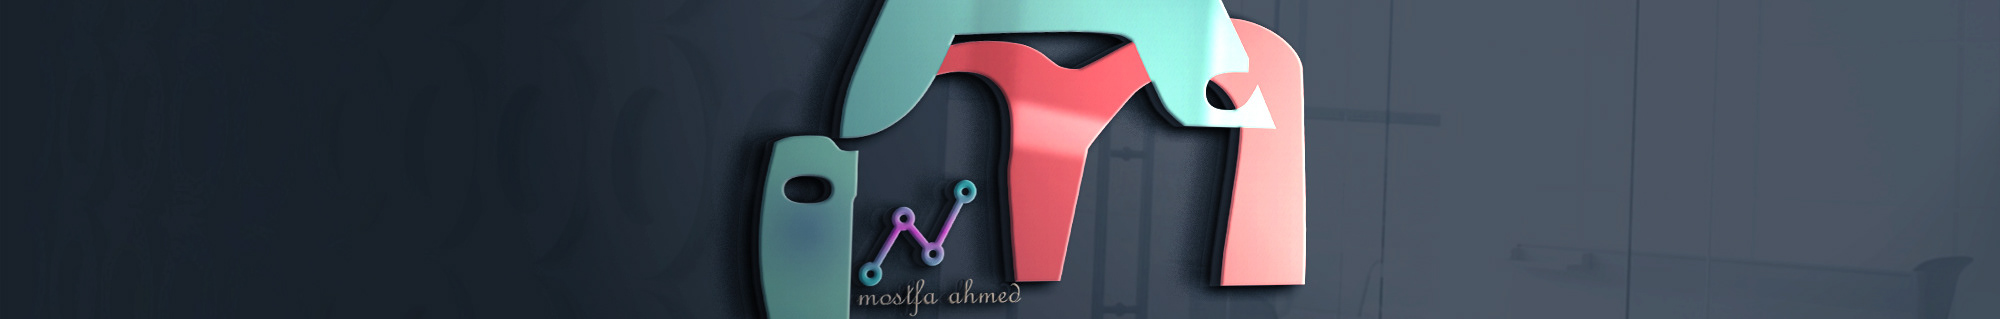 Баннер профиля Mostfa AhMed